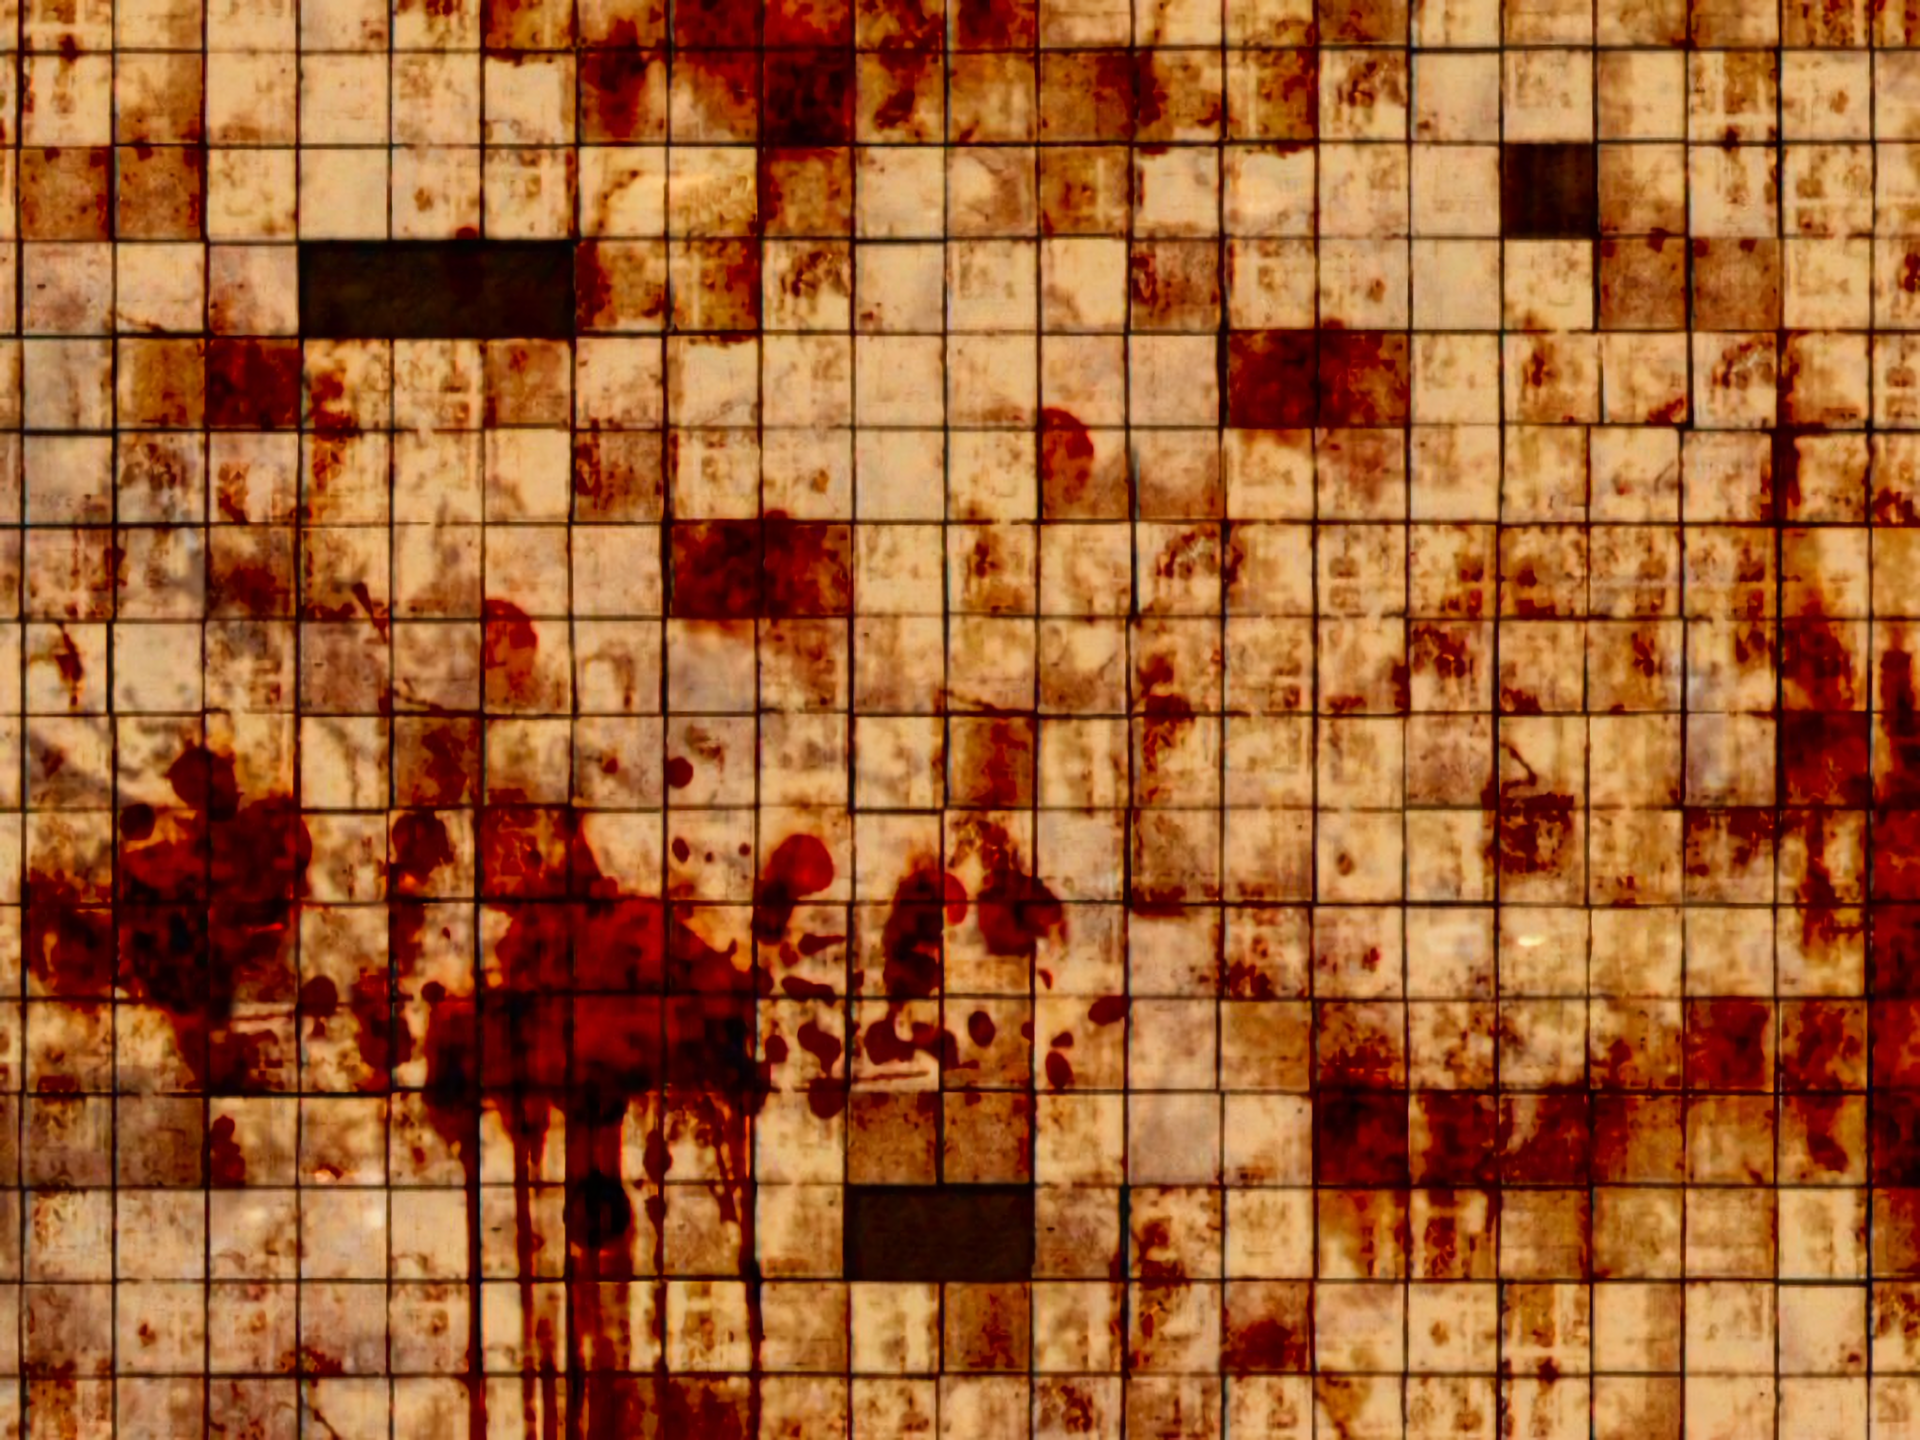 Dark Blood HD Wallpaper | Background Image